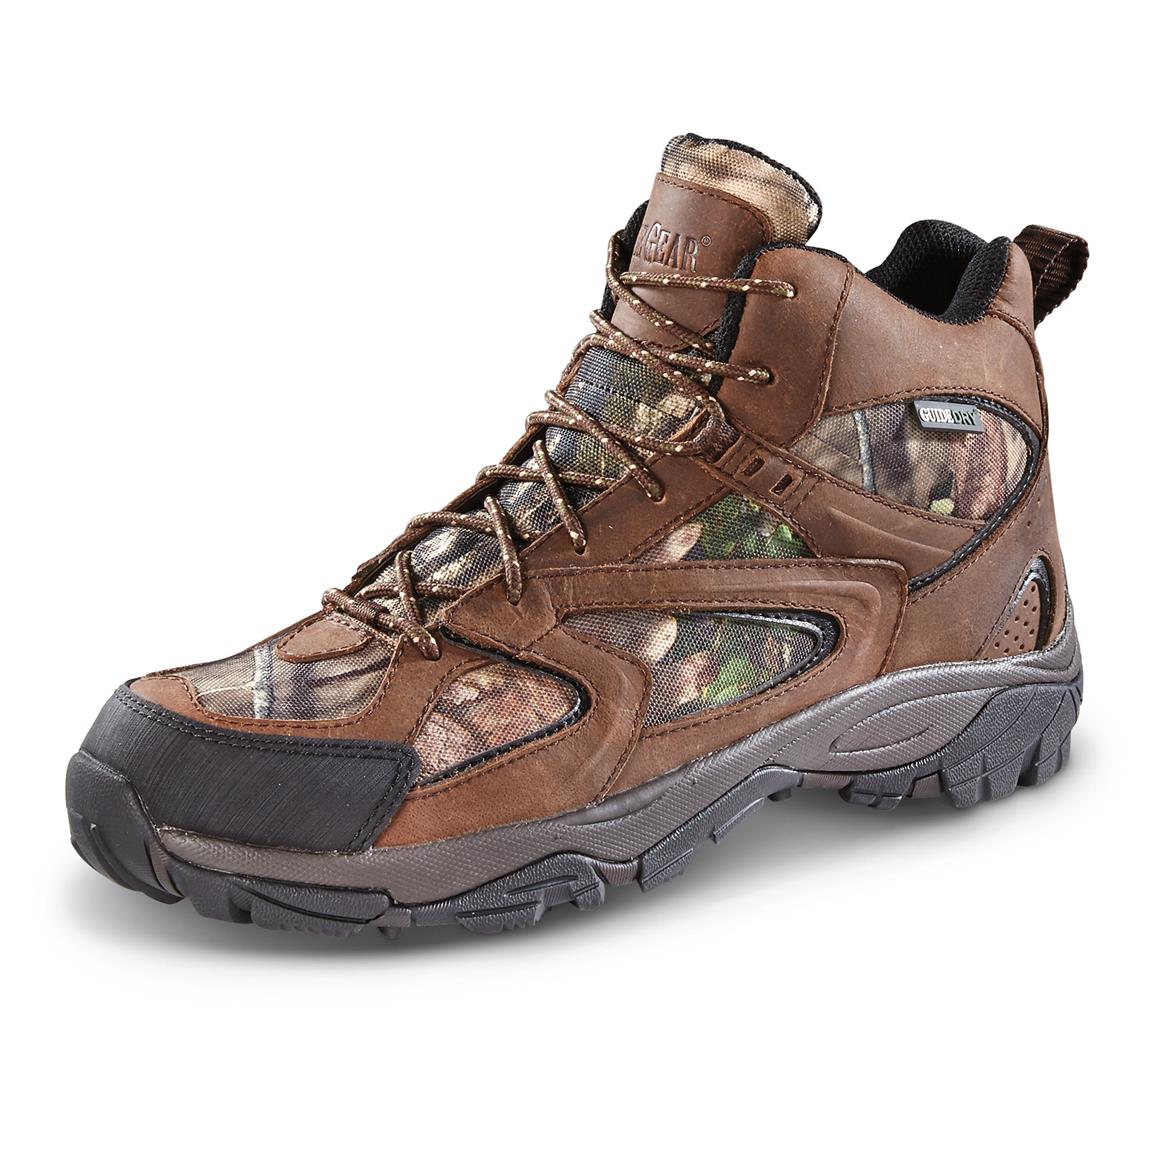 Guide Gear Men's Arrowhead Hiking Boots, Waterproof - 651188, Hiking